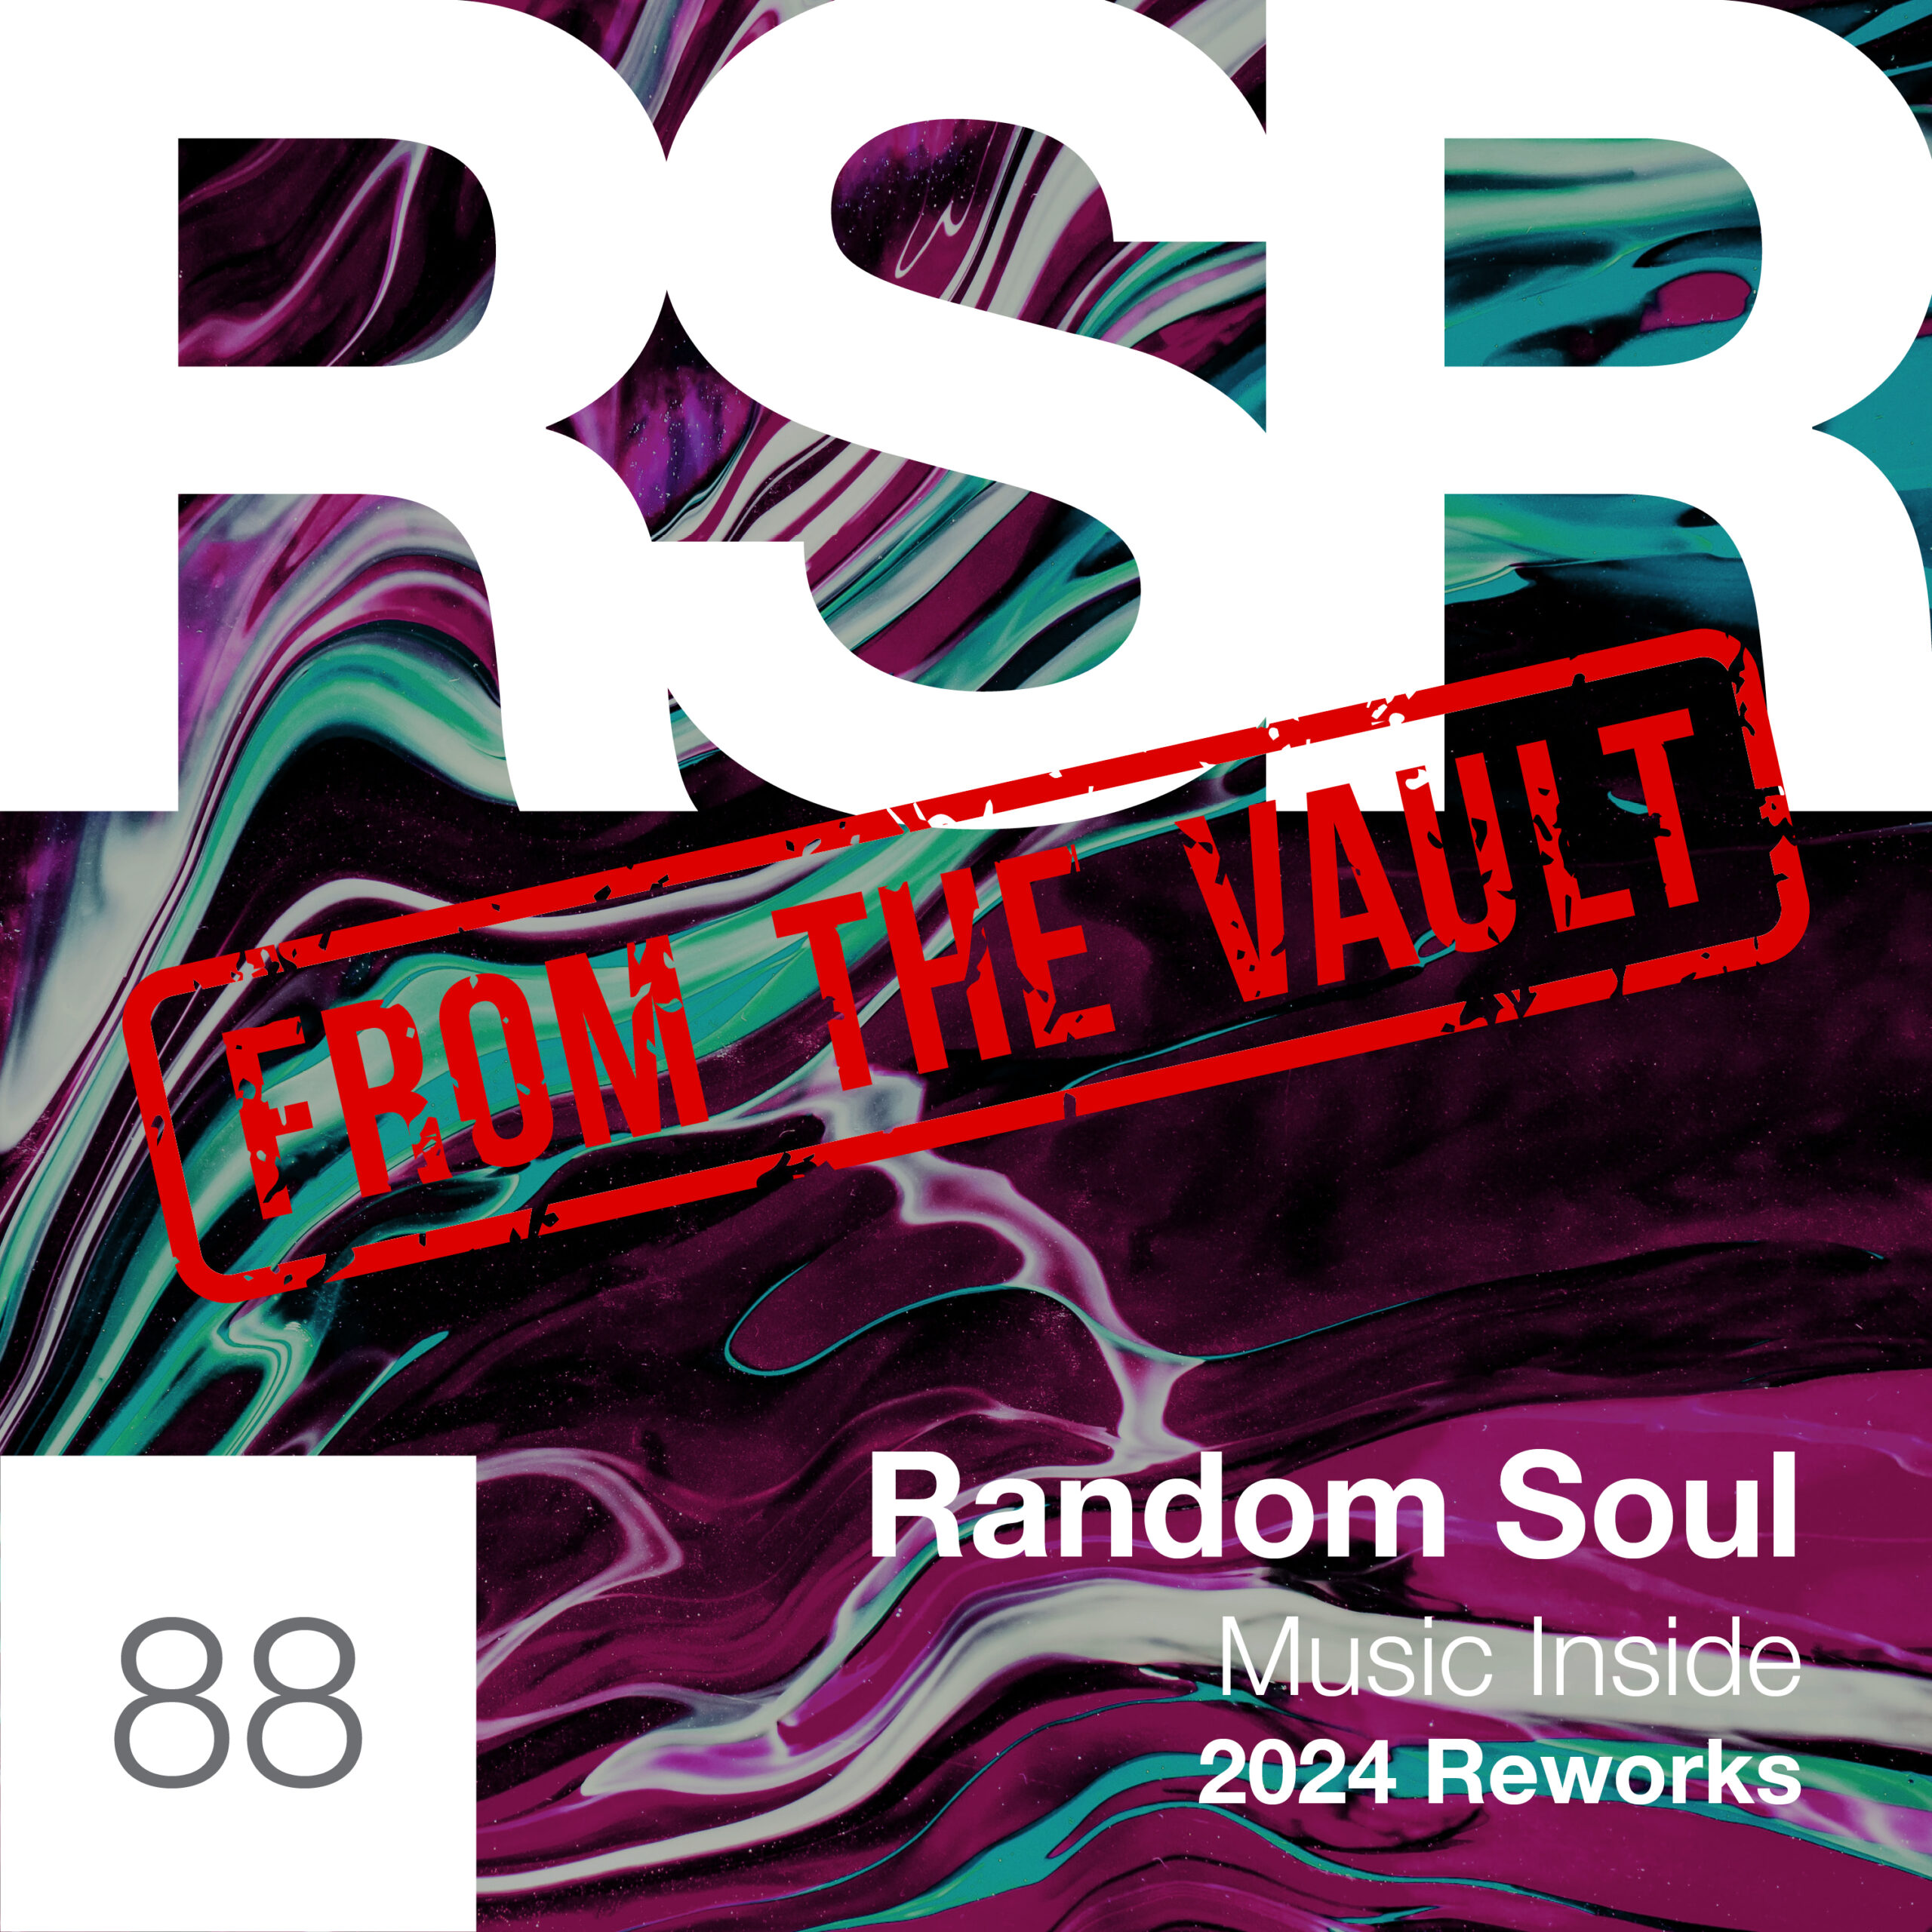 Random Soul - Music Inside (2024 Reworks) on Random Soul Recordings